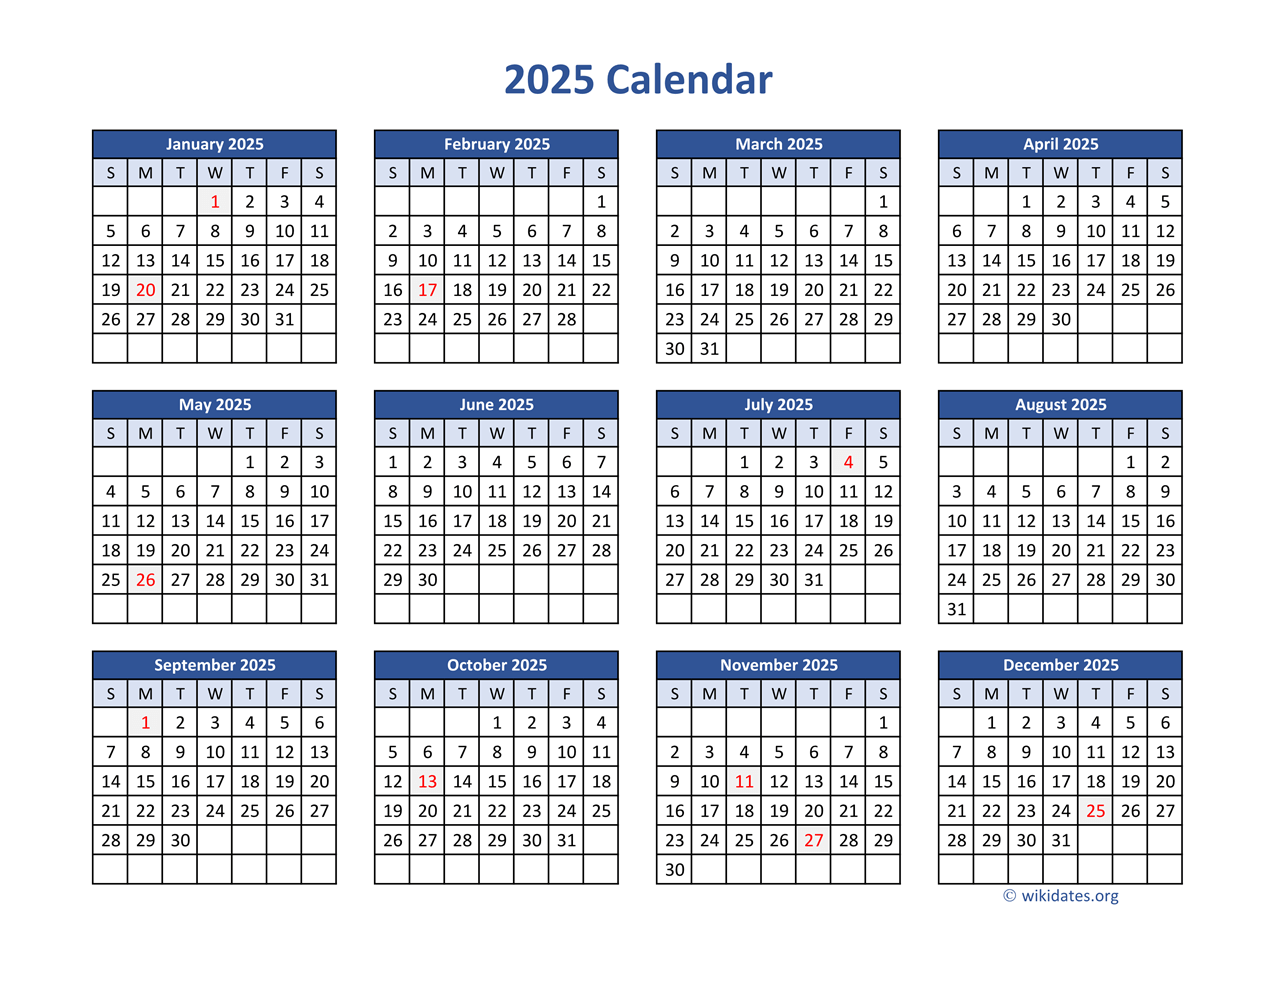 2025 Calendar in PDF  WikiDates.org